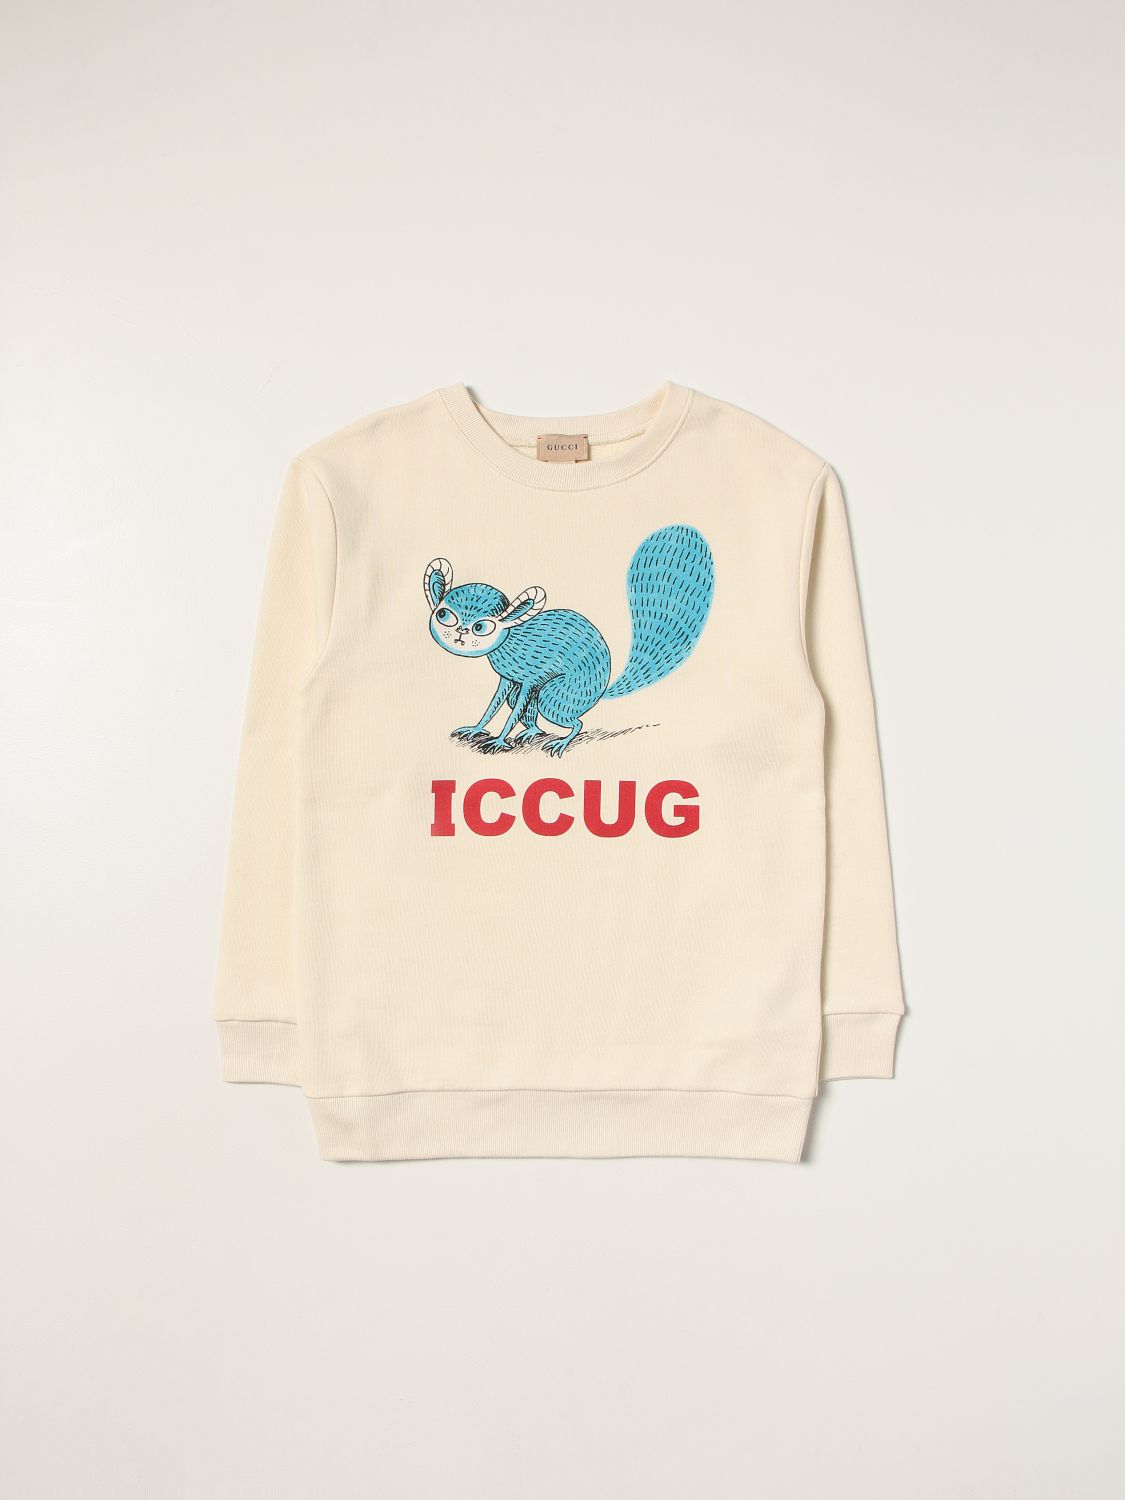 Felpa ICCUG in cotone con logo Giglio.com Bambino Abbigliamento Maglioni e cardigan Felpe e hoodies Felpe 